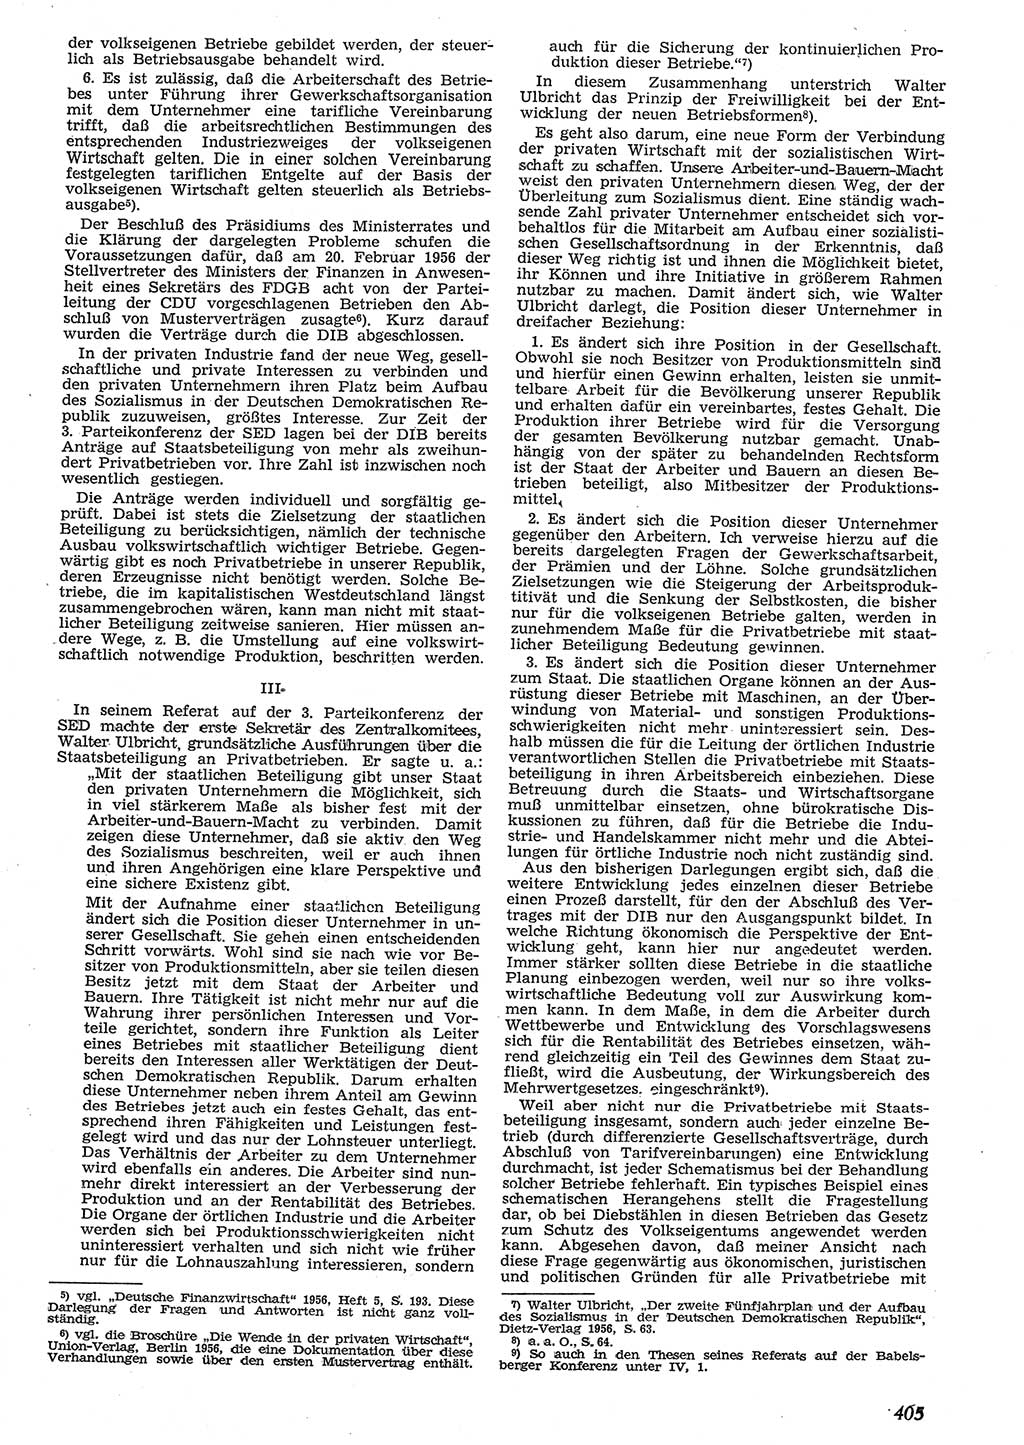 Neue Justiz (NJ), Zeitschrift für Recht und Rechtswissenschaft [Deutsche Demokratische Republik (DDR)], 10. Jahrgang 1956, Seite 405 (NJ DDR 1956, S. 405)